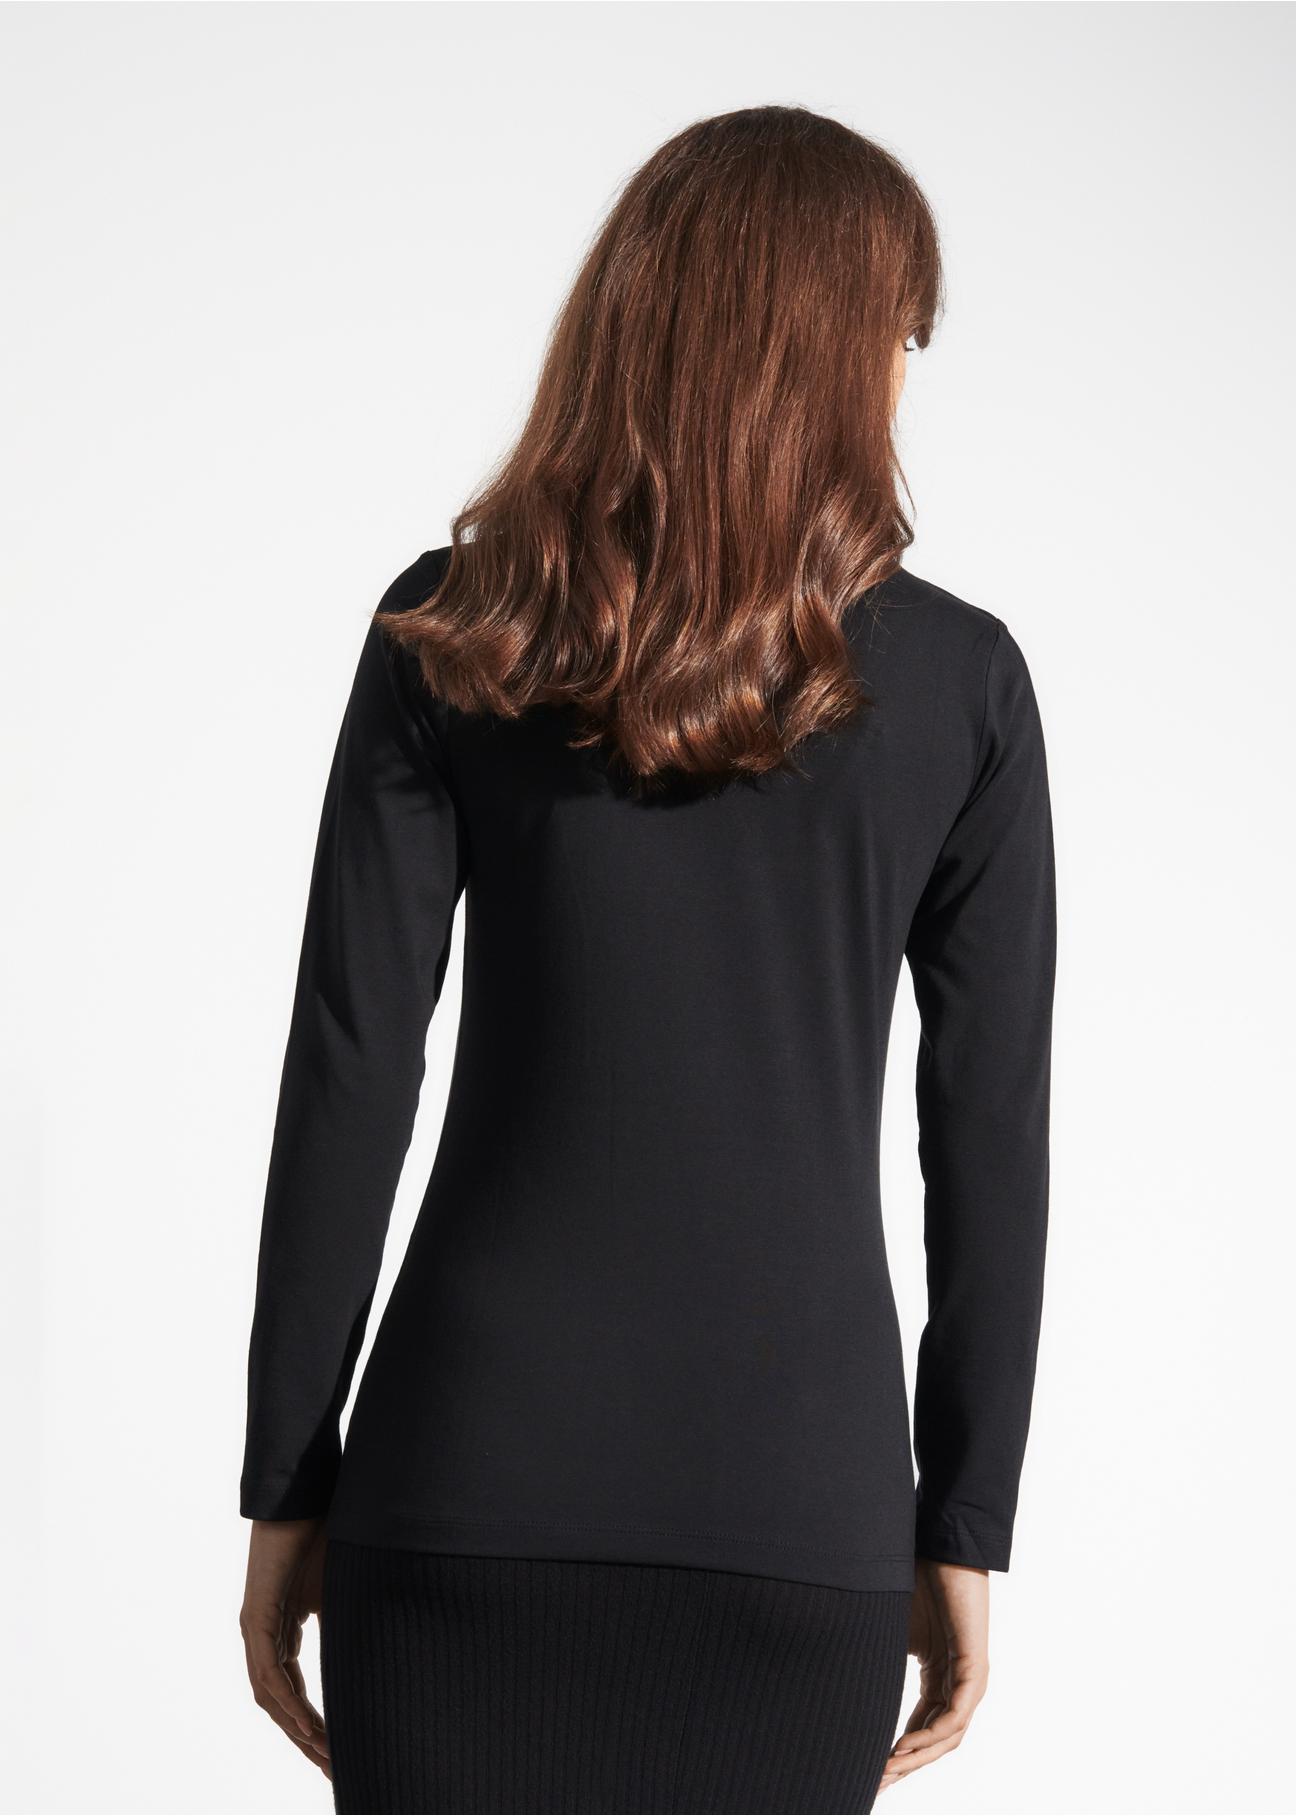 Czarna bluzka damska z długim rękawem LSLDT-0038-99(KS)